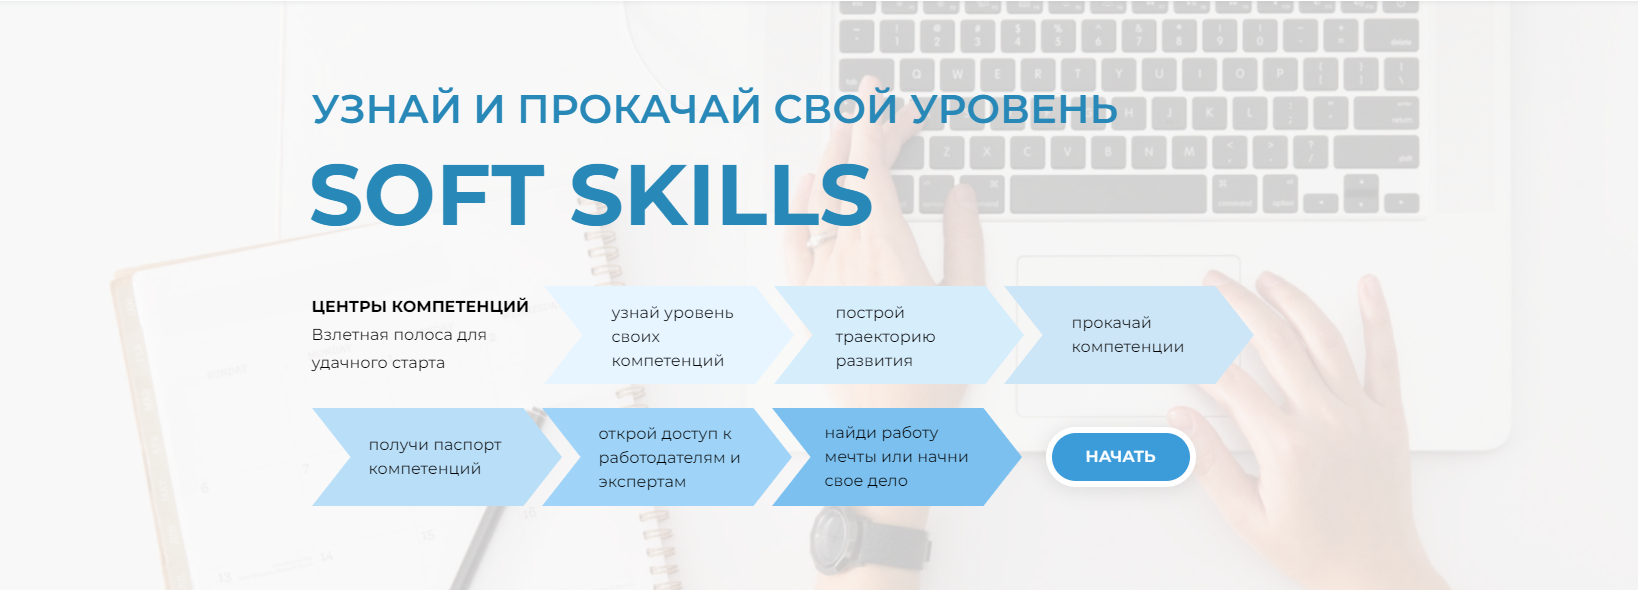 Является центром компетенций. Центр компетенций Россия Страна возможностей. Soft skills центр компетенций. РО,сия стра6а возможностей.